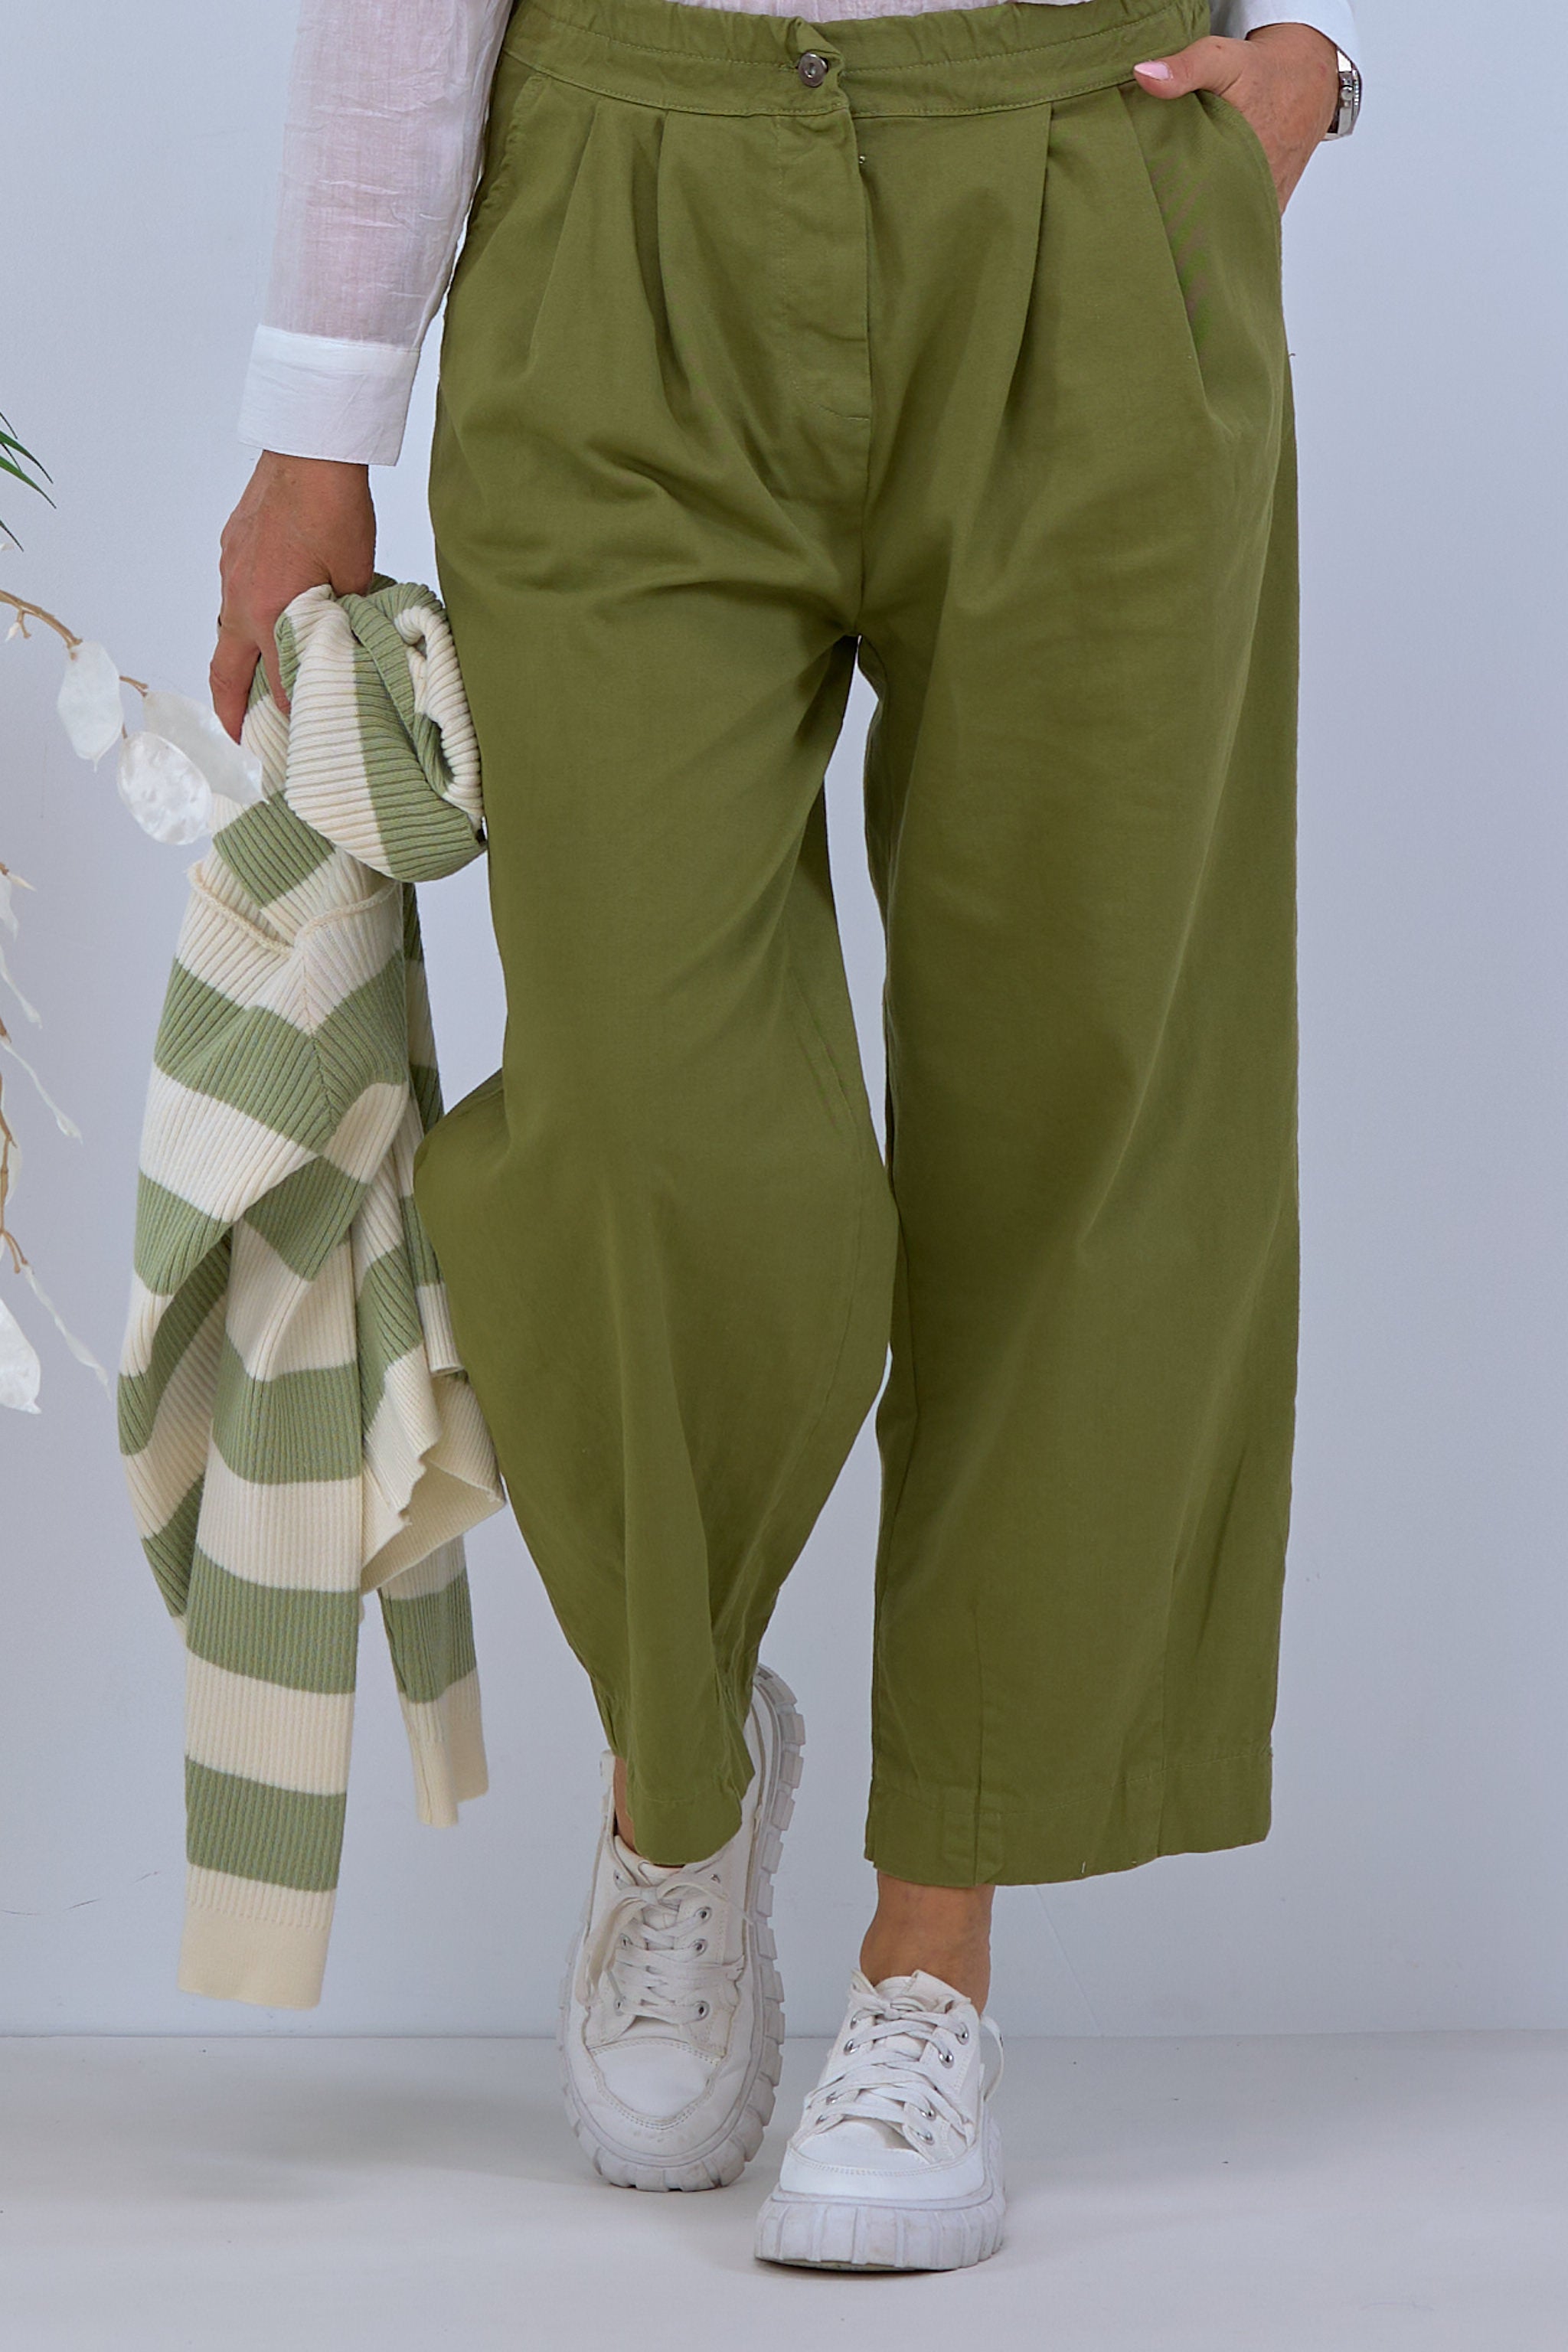 Damen Hose mit Bundfalten in khaki von Trends & Lifestyle Deutschland GmbH